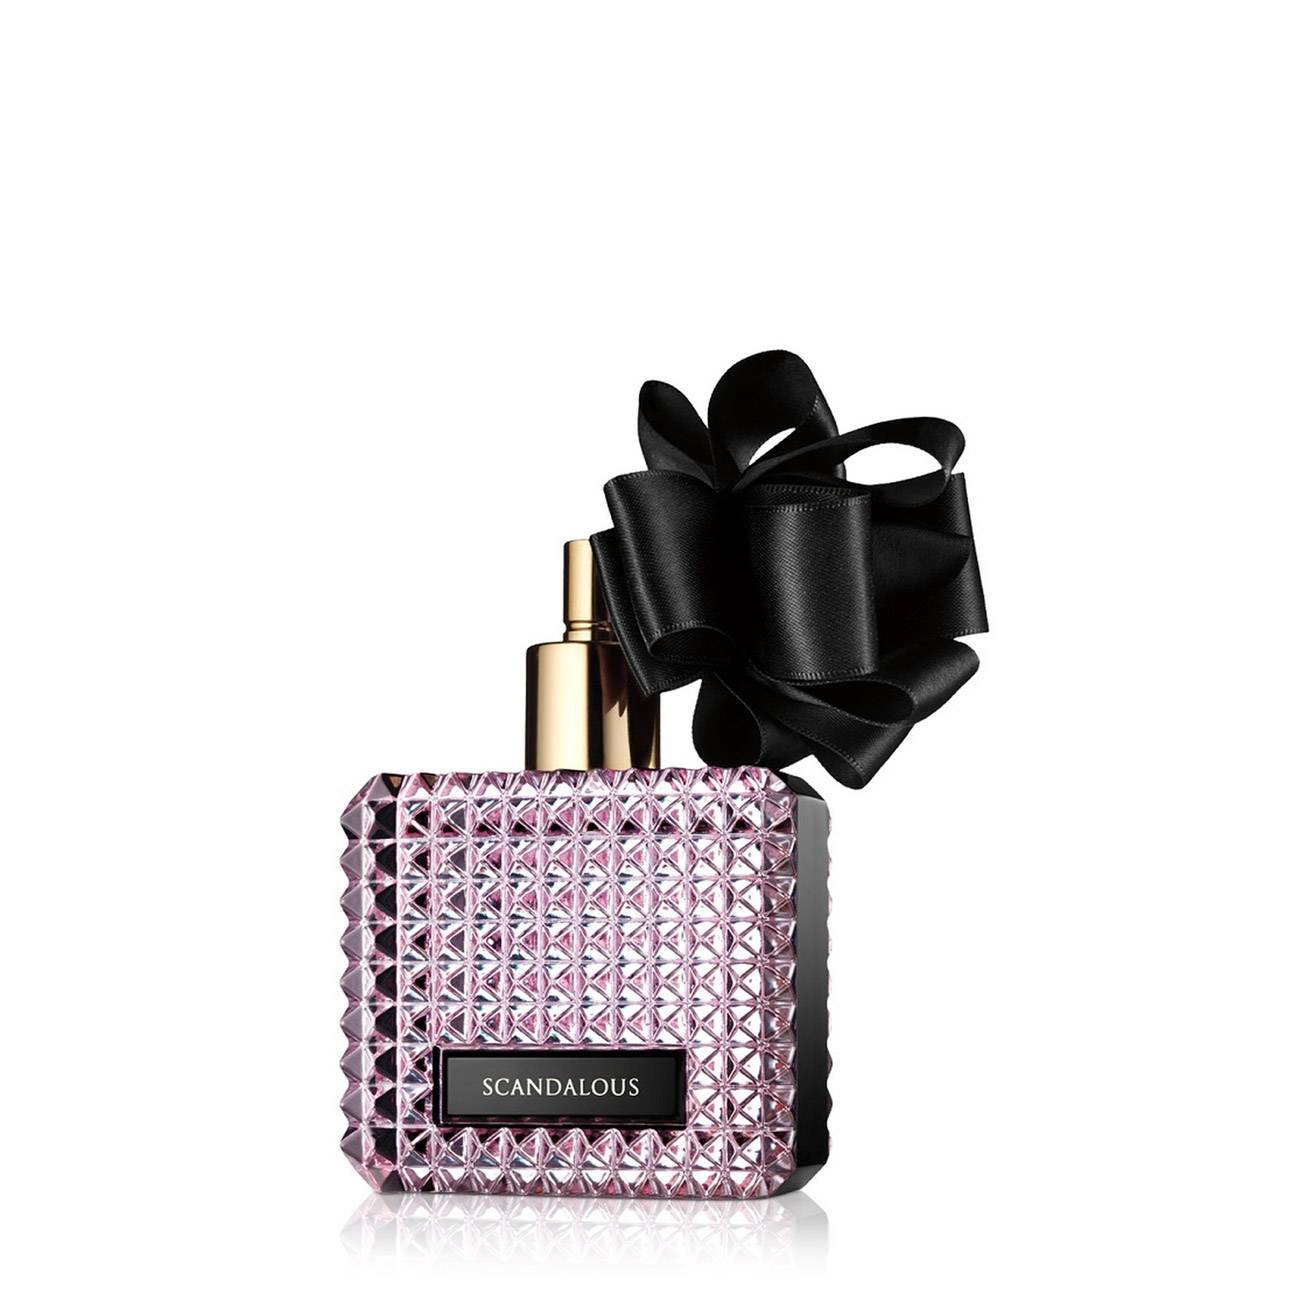 Apa de Parfum Victoria’s Secret SCANDALOUS 50ml cu comanda online